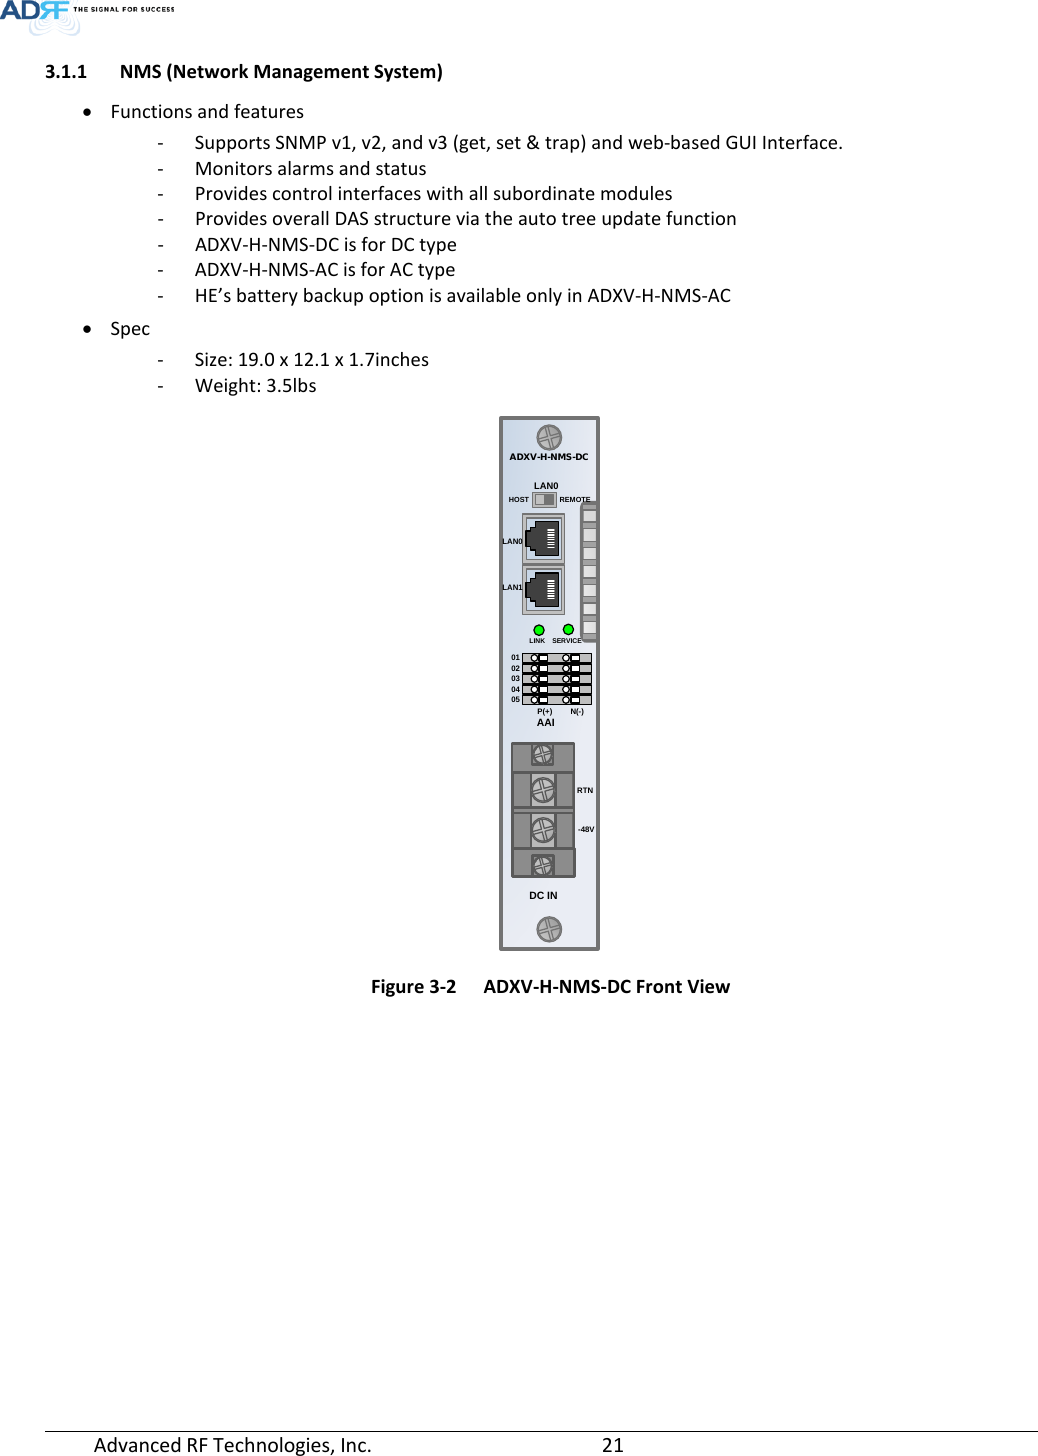 Page 21 of ADRF KOREA ADXV-R-25VUNA DAS (Distributed Antenna System) User Manual ADXV DAS